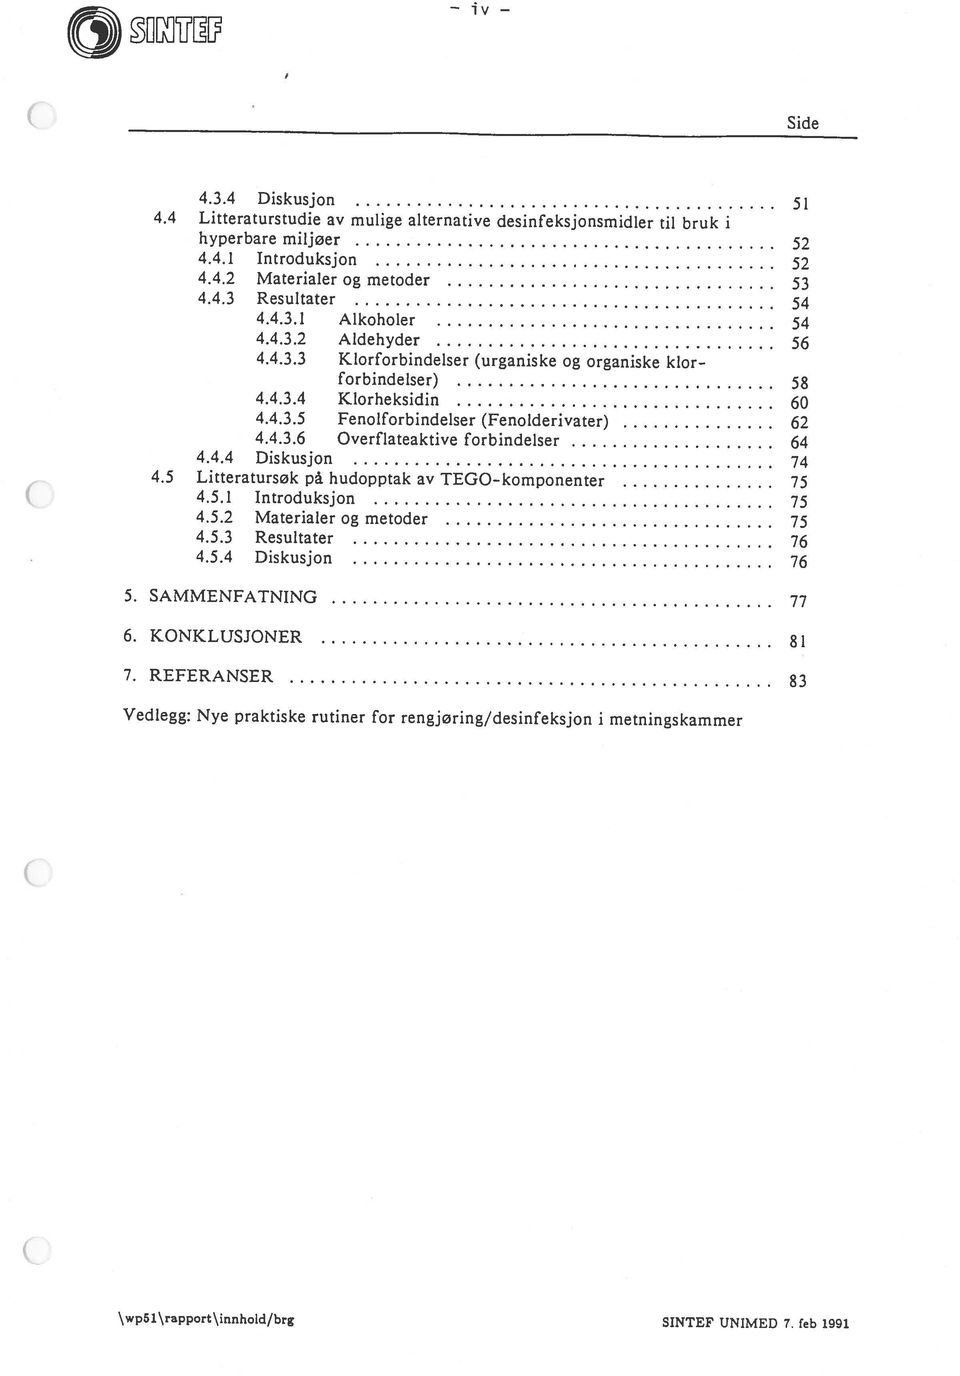 feb 1991 Vedlegg: Nye praktiske rutiner for rengjøring/desinfeksjon i metningskammer 7. REFERANSER 83 6. KONKLUSJONER 81 5. SAMMENFATNING 77 4.